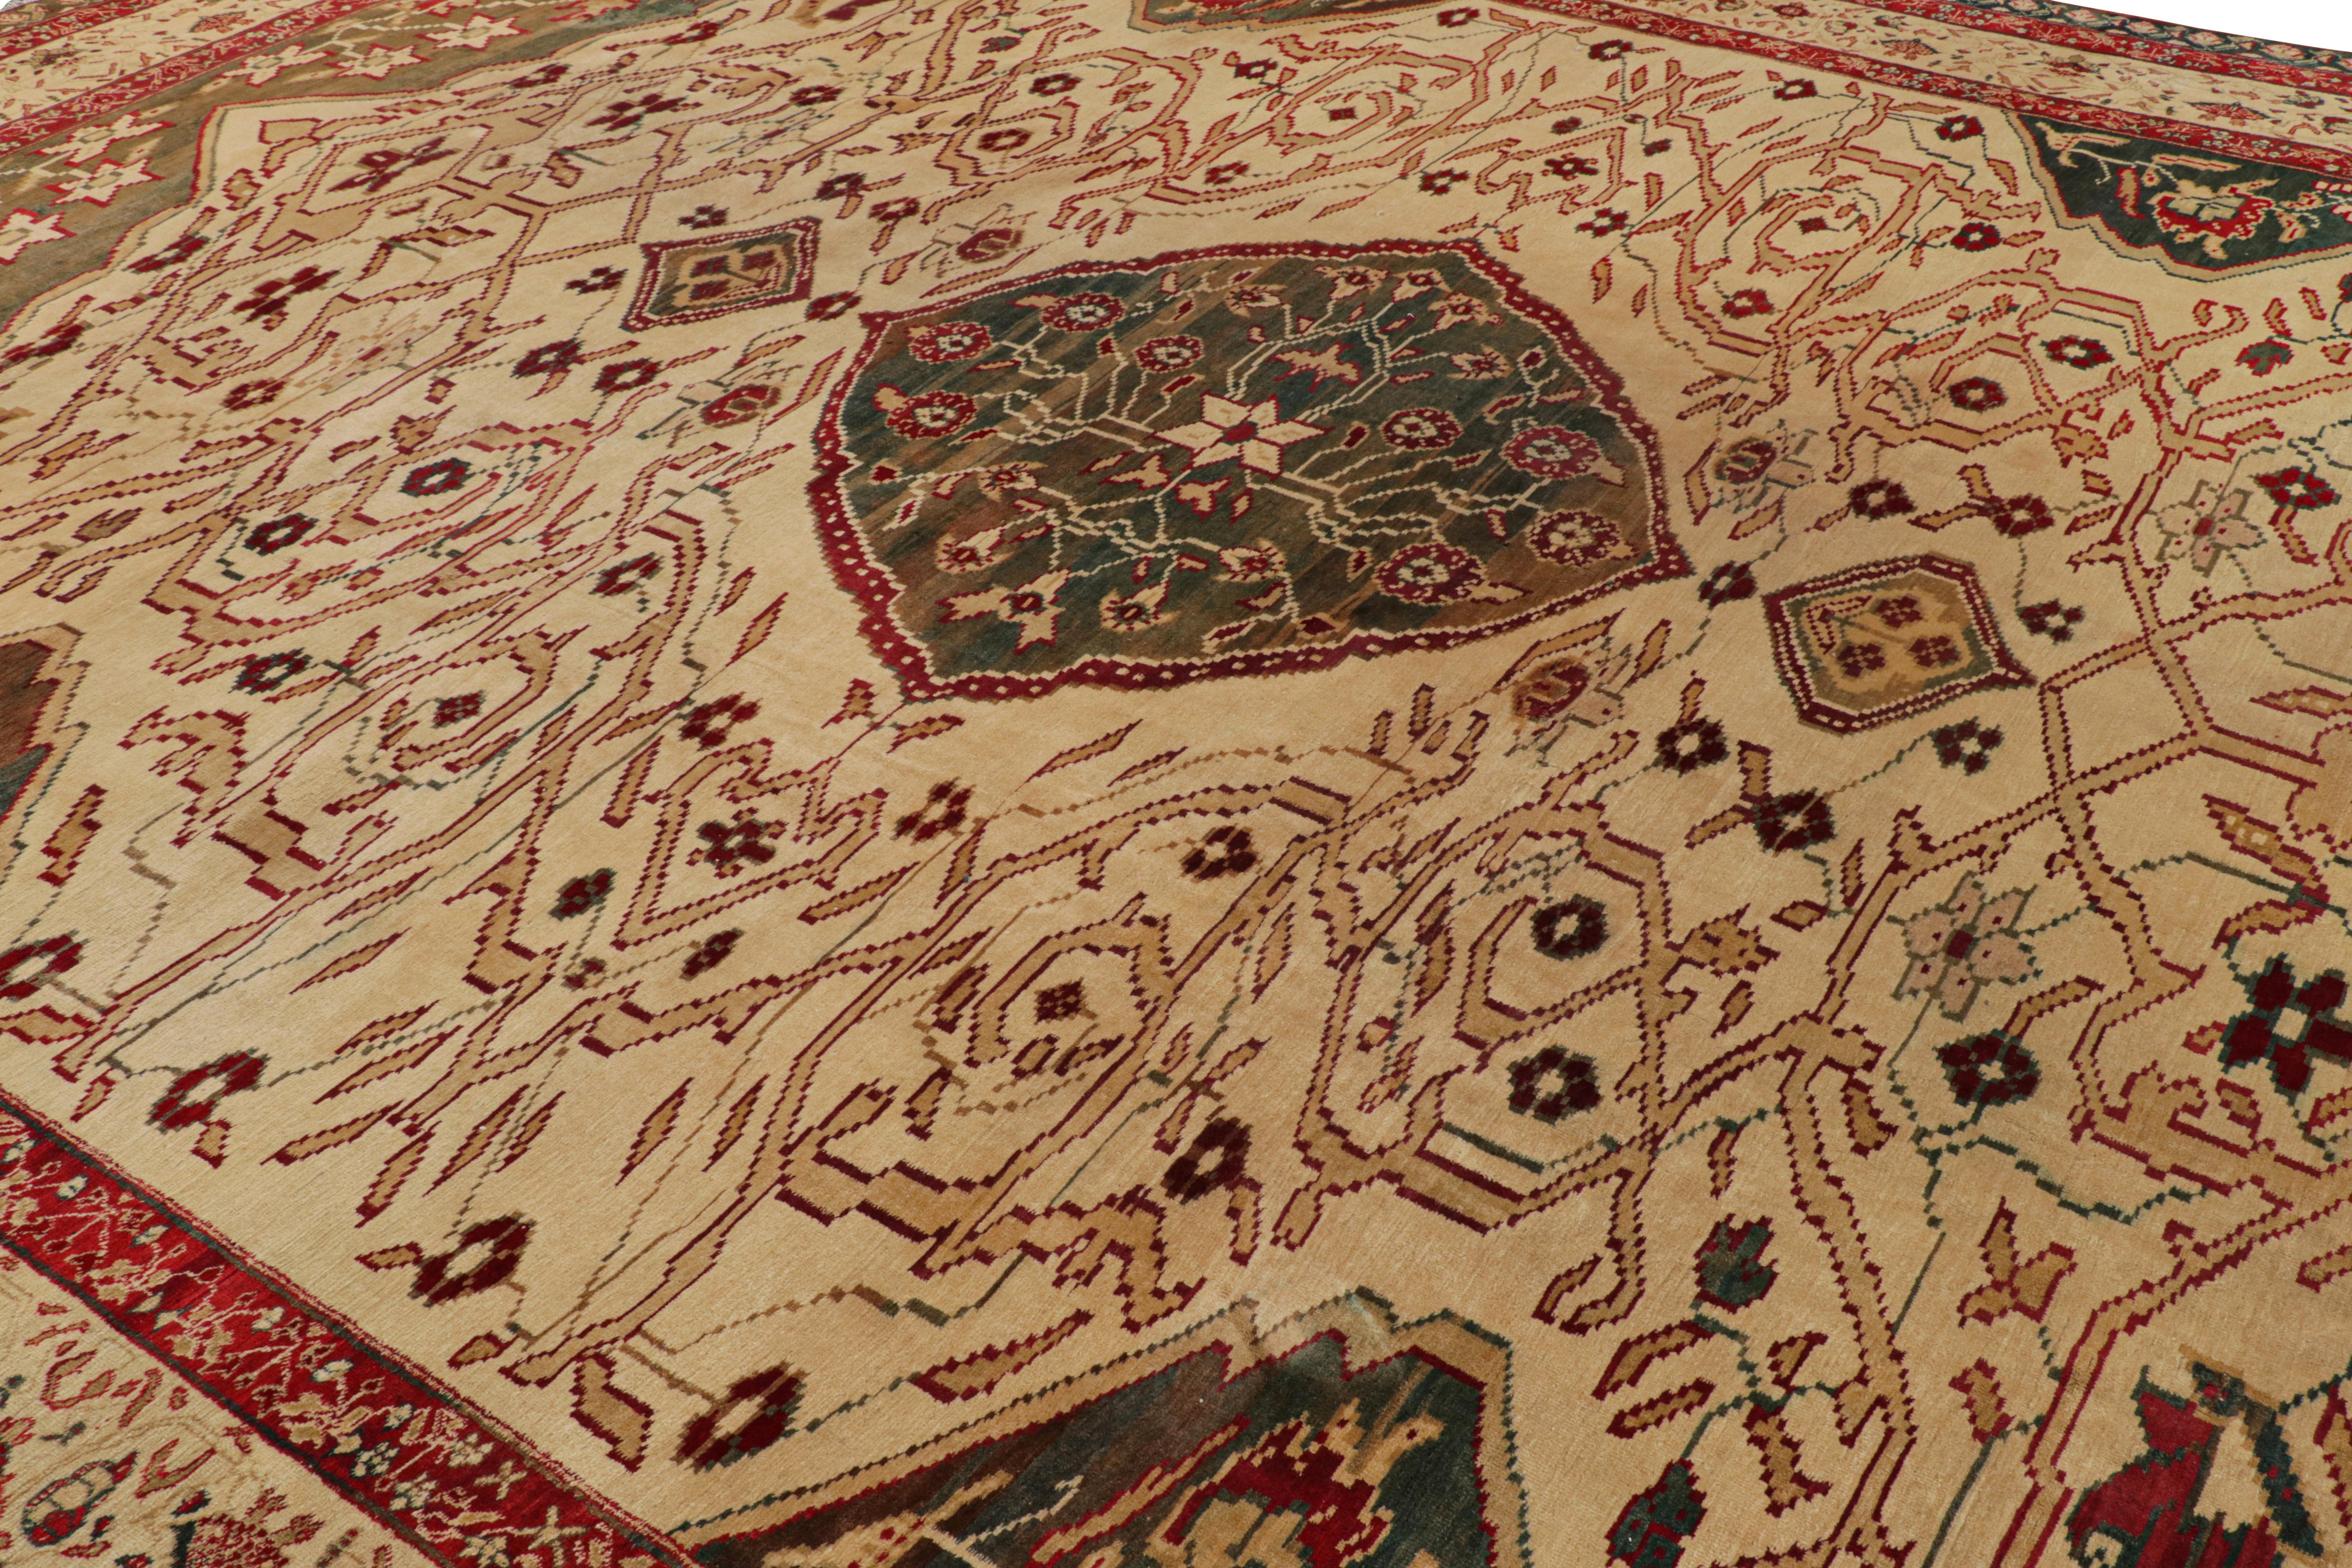 Dieser handgeknüpfte Wollteppich aus Indien (ca. 1920-1930) in der Größe 13x16 ist ein spezieller Agra Jail-Teppich, der ein Zusammenspiel von floralen und medaillonartigen Elementen aufweist.

Über das Design

Kenner werden diesen herausragenden